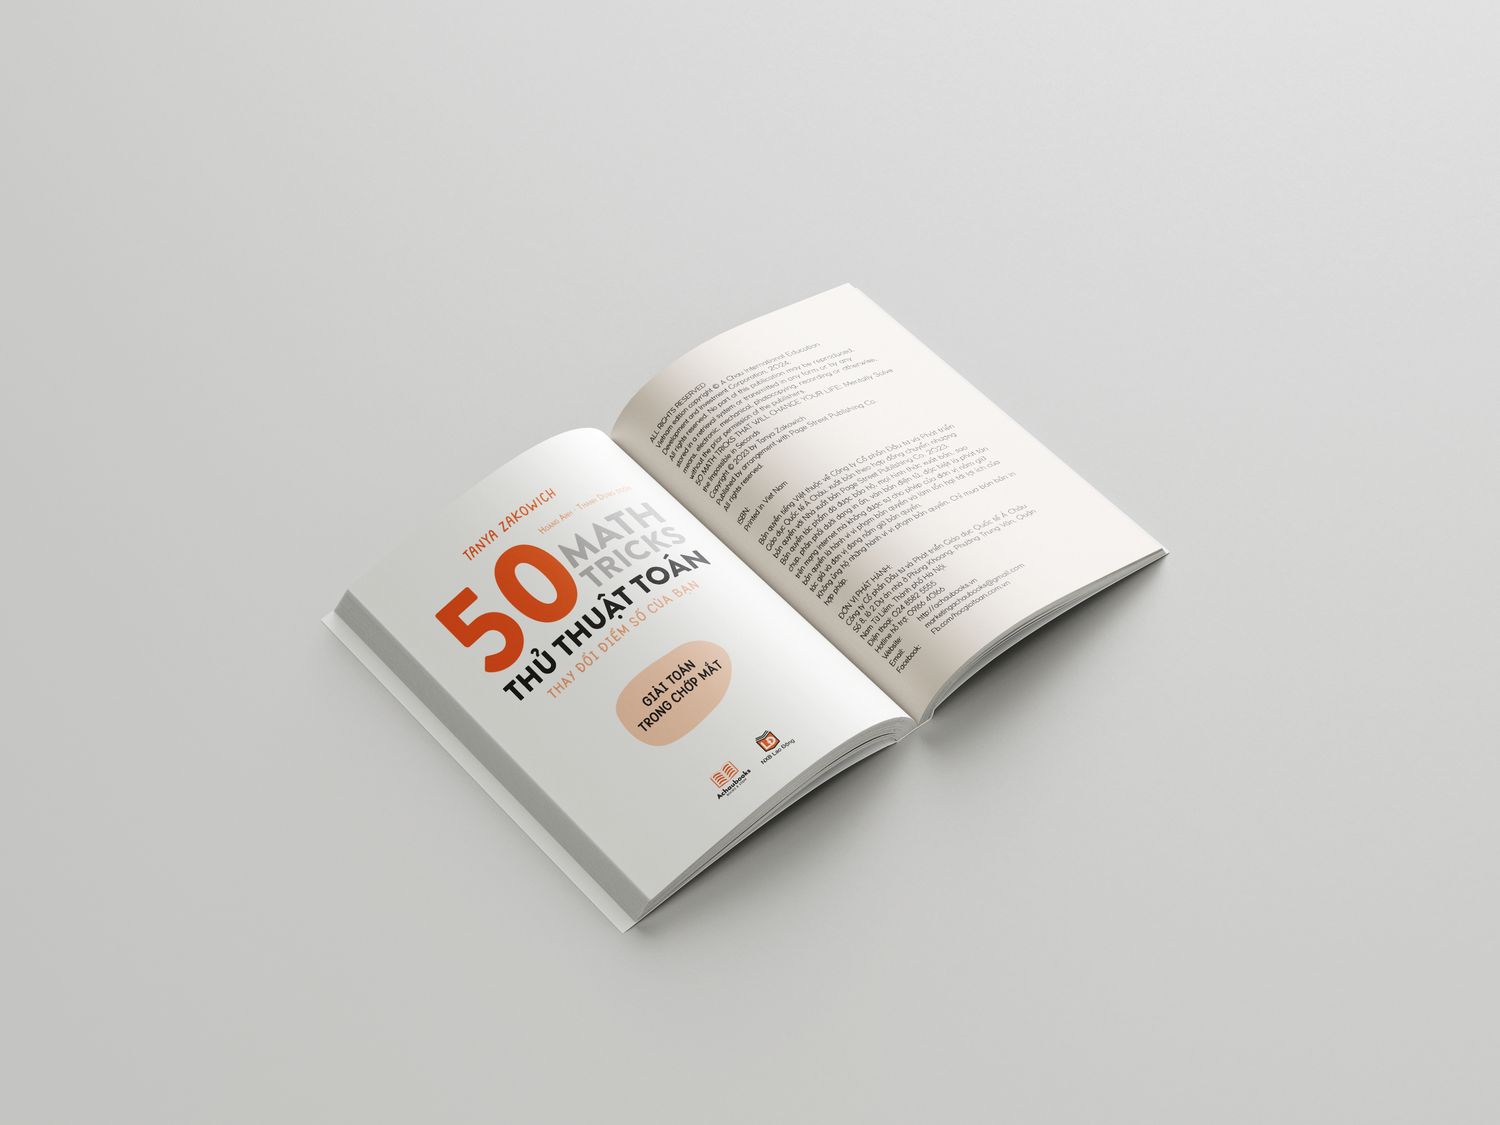 50 THỦ THUẬT TOÁN ( 50 math tricks ) - cuốn sách như giáo trình tập gym cho não bộ - Á Châu Books, Bìa mềm